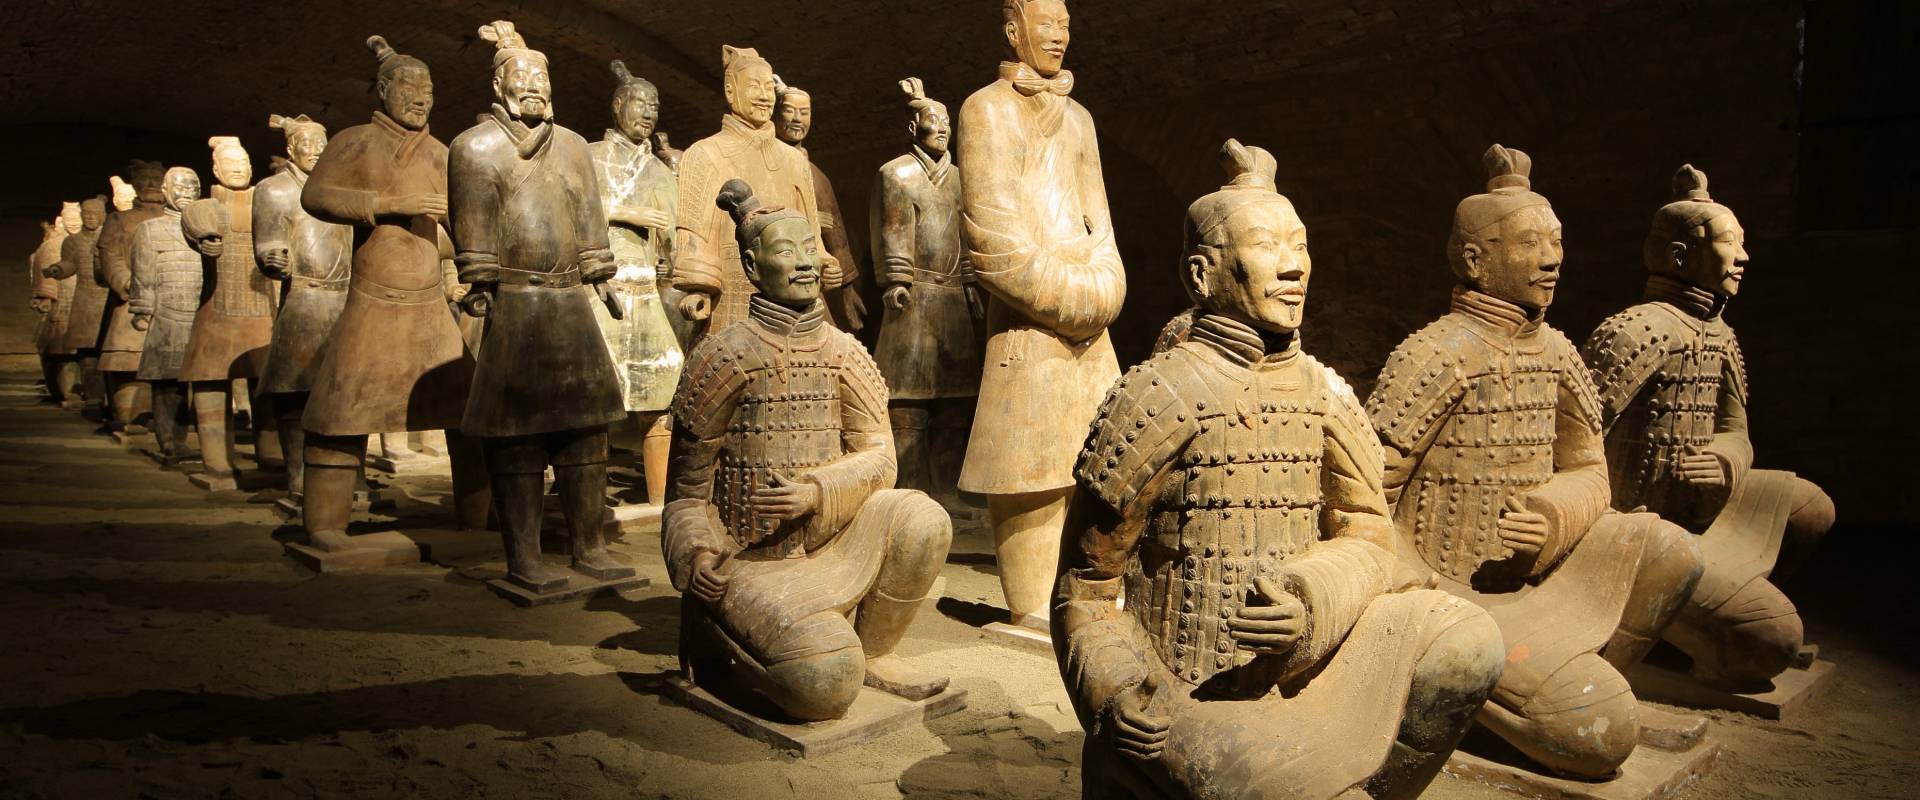 Mostra Cina Millenaria - I Guerrieri di Xian - Castello di San Pietro foto di Castello di San Pietro